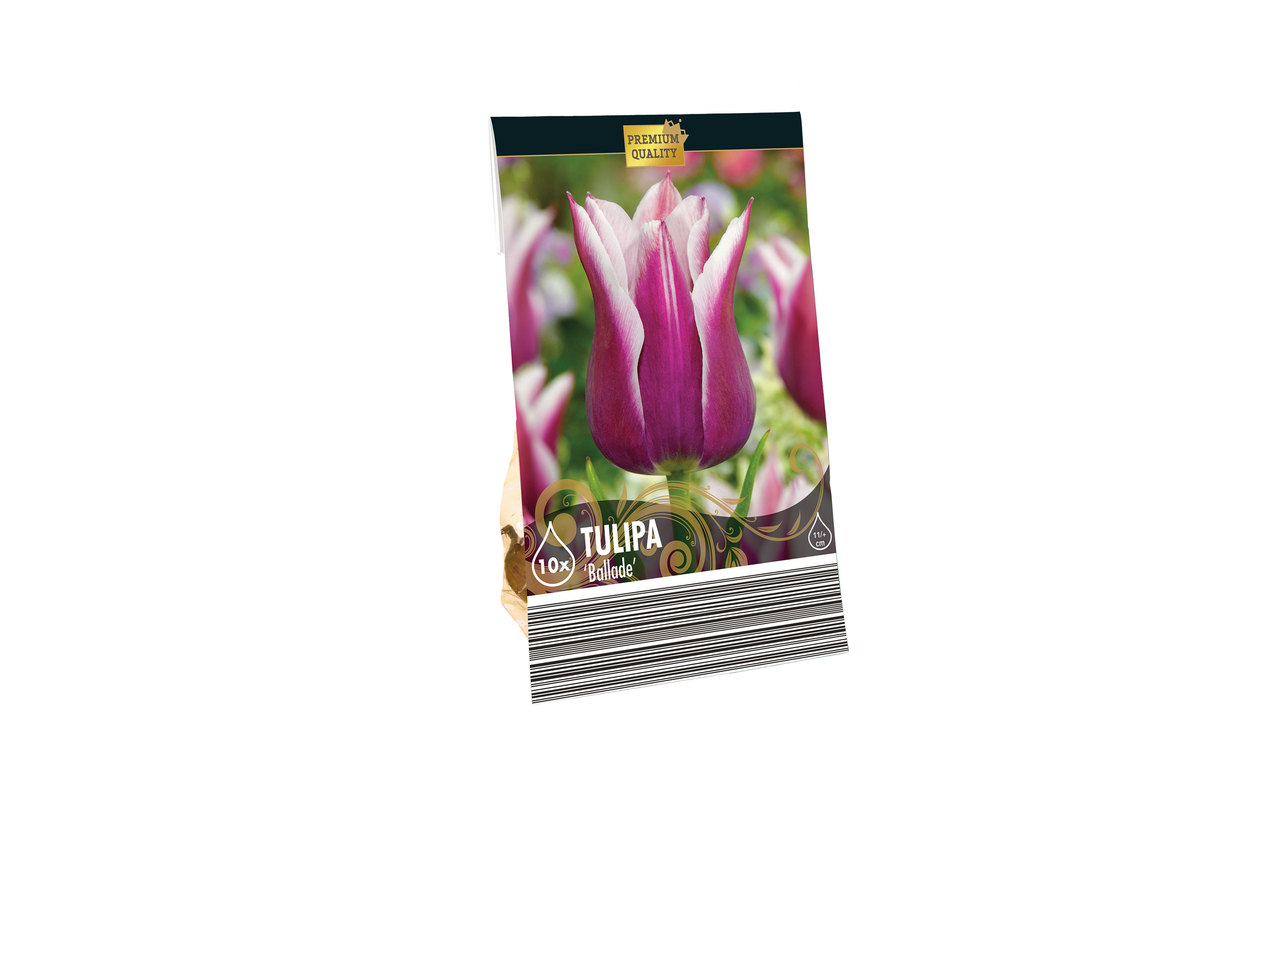 Daffodil Bulbs1